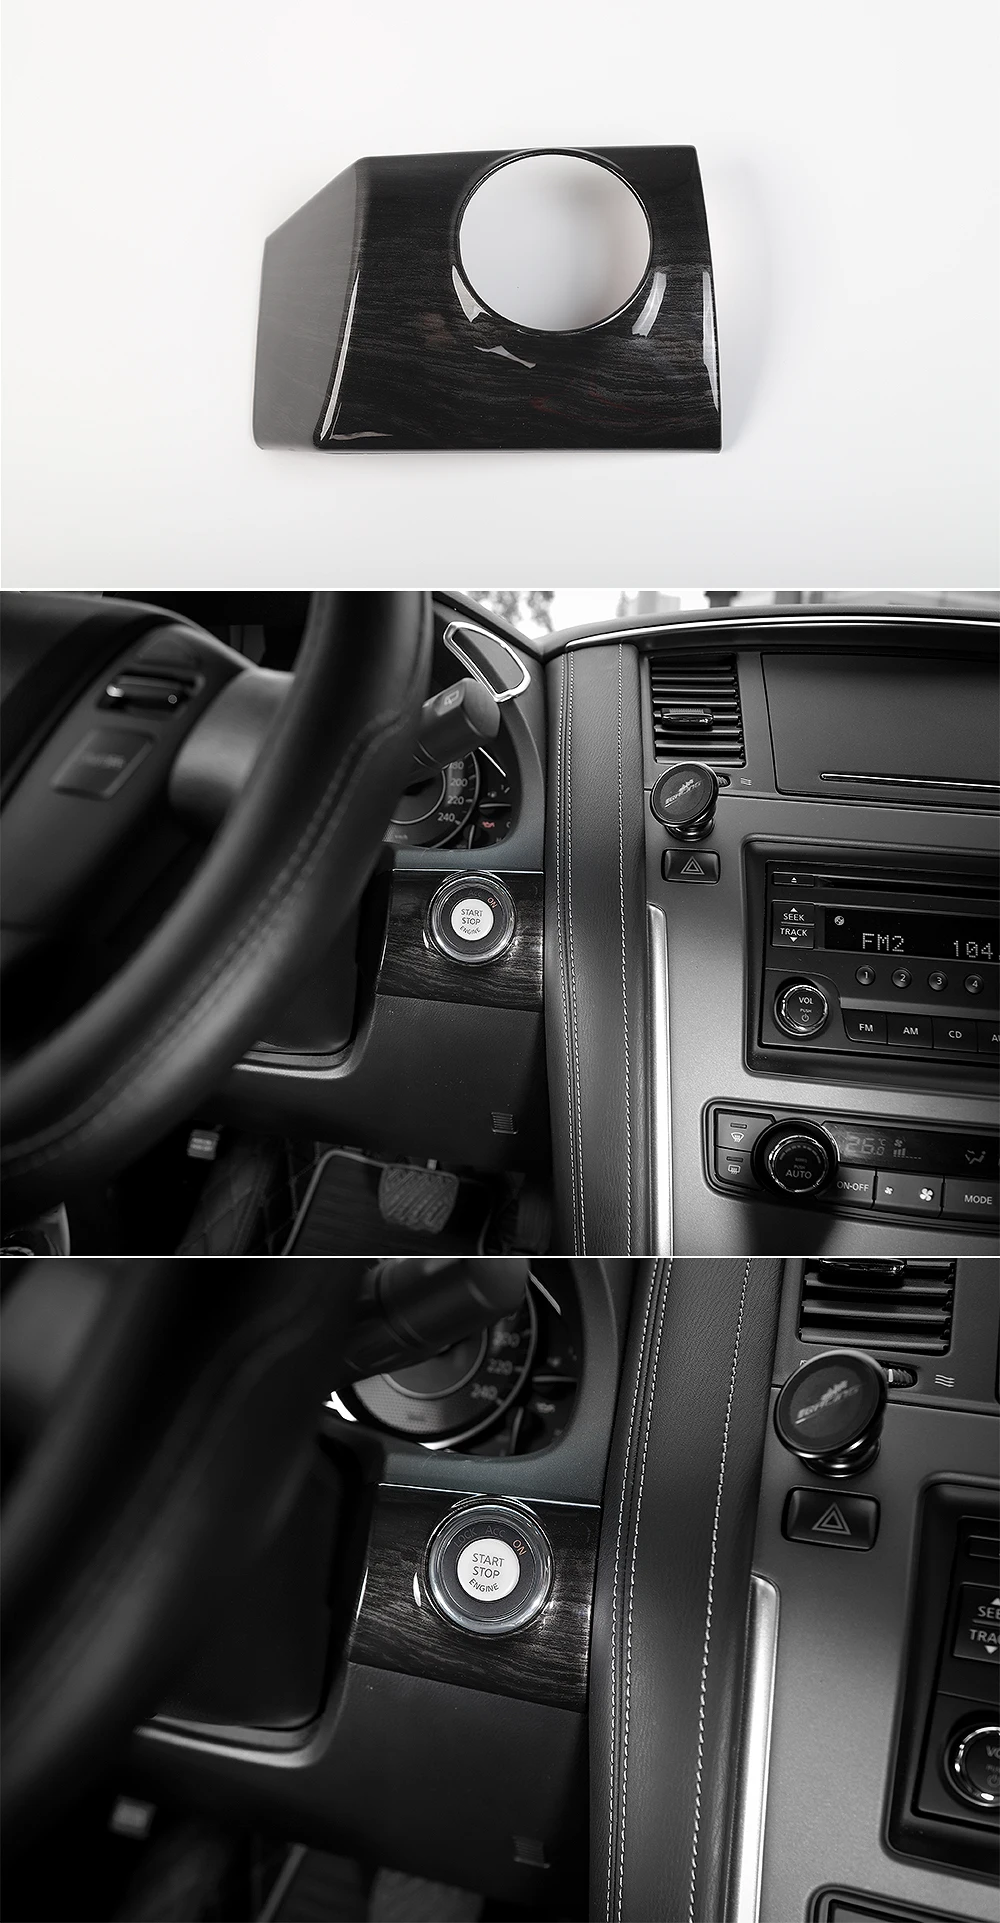 SHINEKA автомобильный двигатель кнопка запуска стоп накладка рамка подходит для Nissan Patrol Y62+ автомобильные аксессуары высокое качество